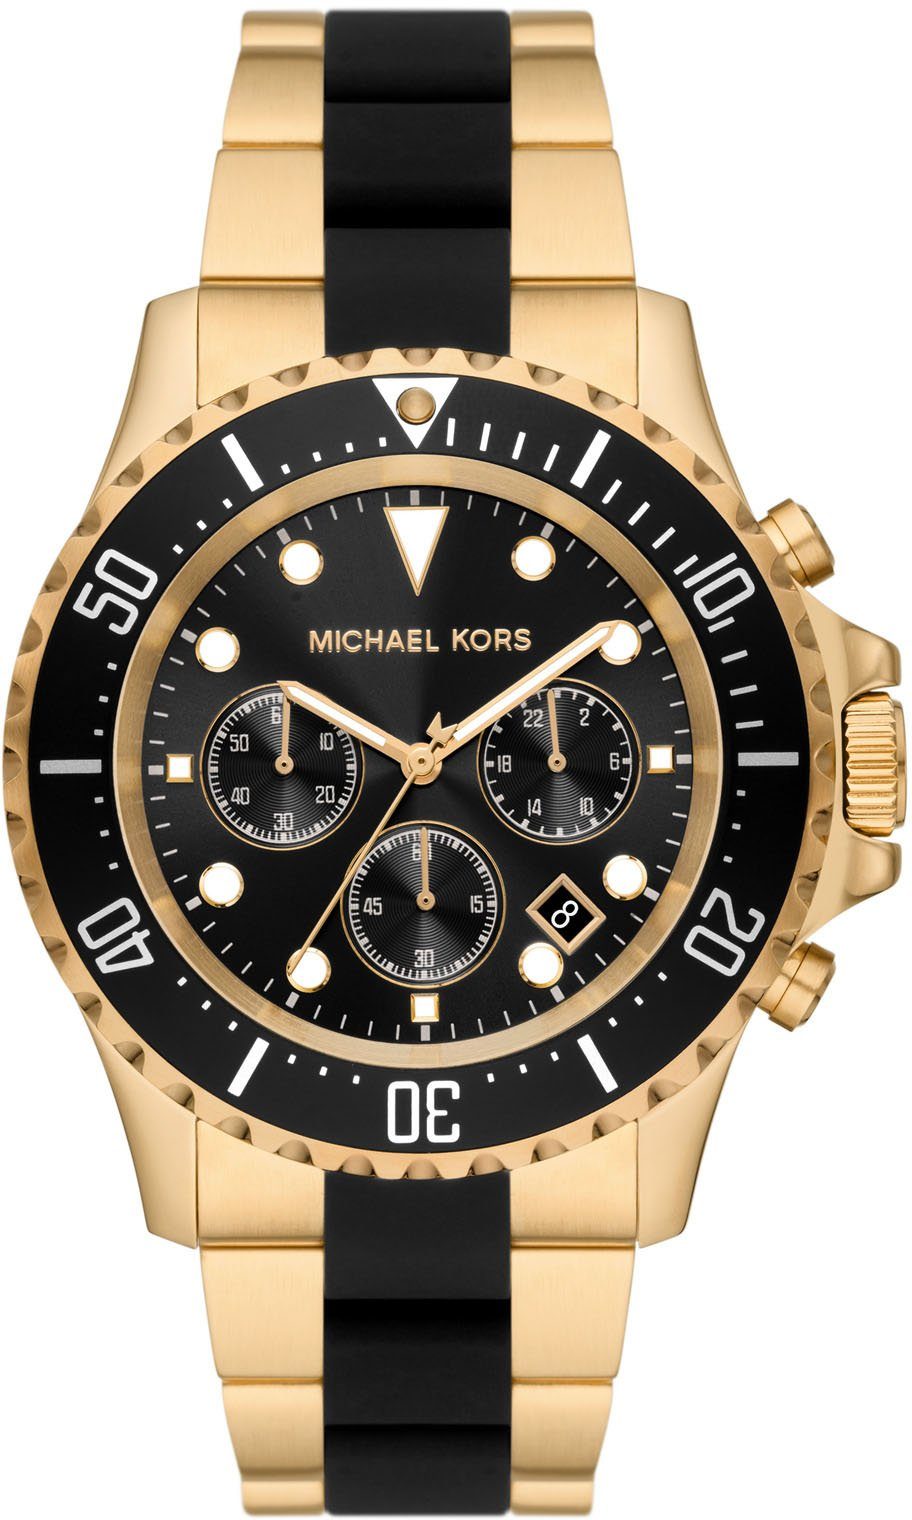 Michael Kors Uhr gold online kaufen | OTTO